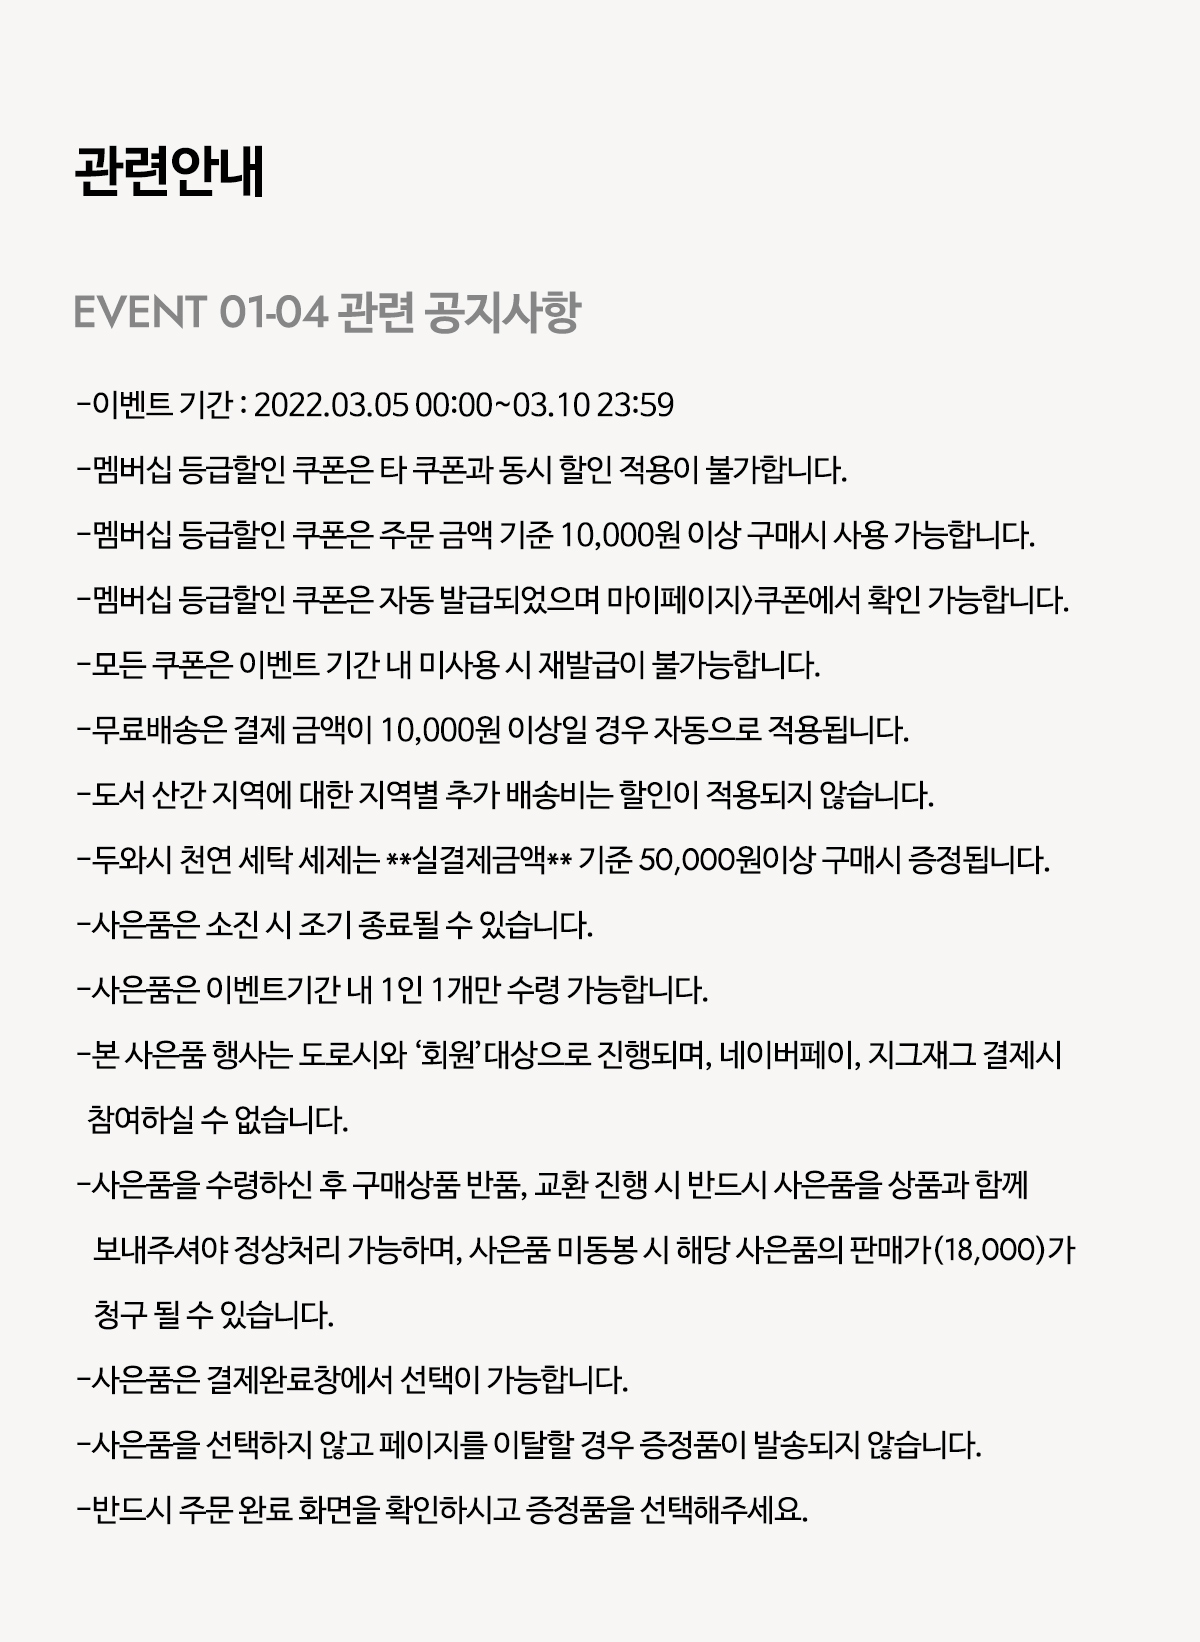 Event notice